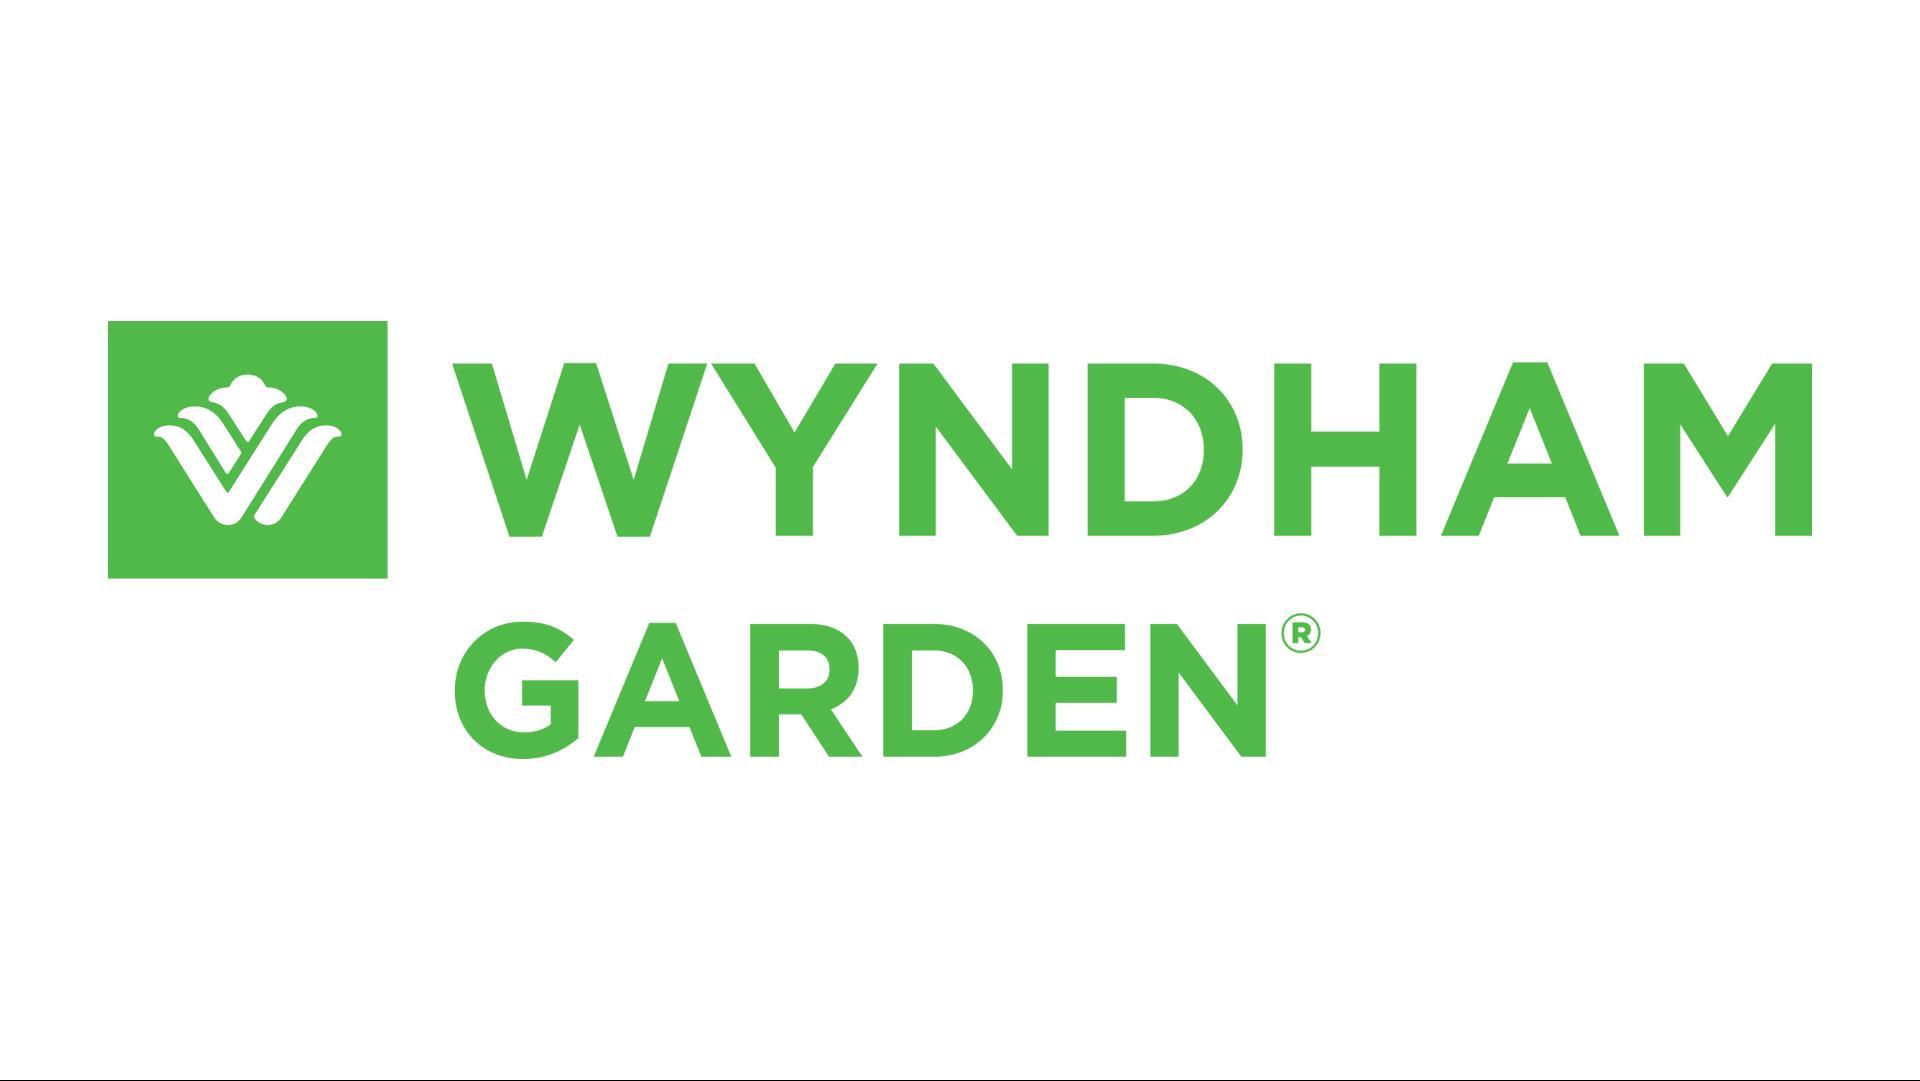 Wyndham Garden Remarkables Park Queenstown in Queenstown, NZ